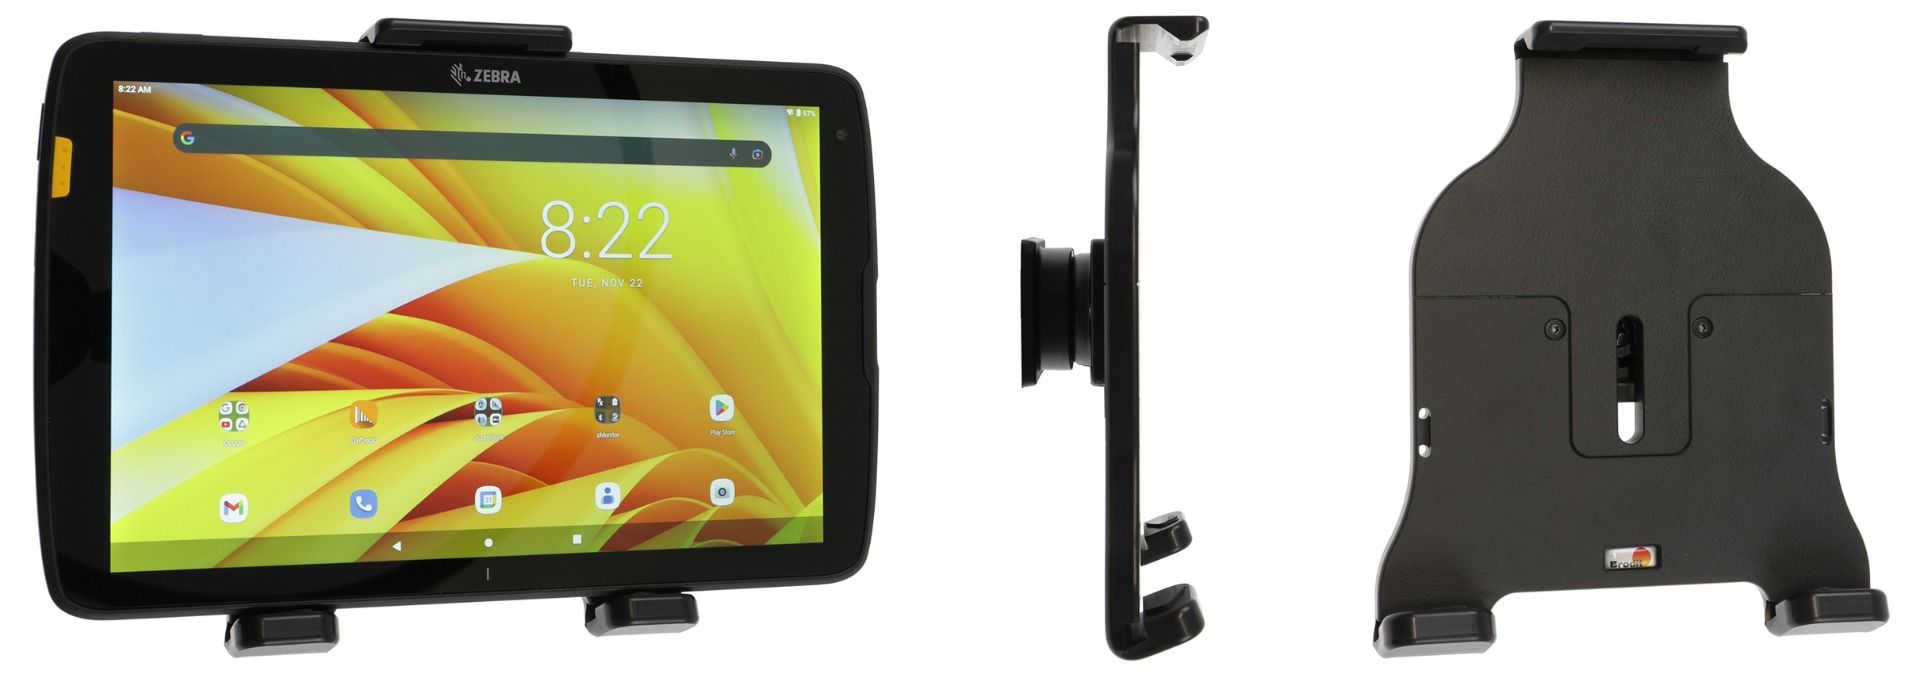 Brodit holder adjustable Tablet 153-179mm/ max 9mm